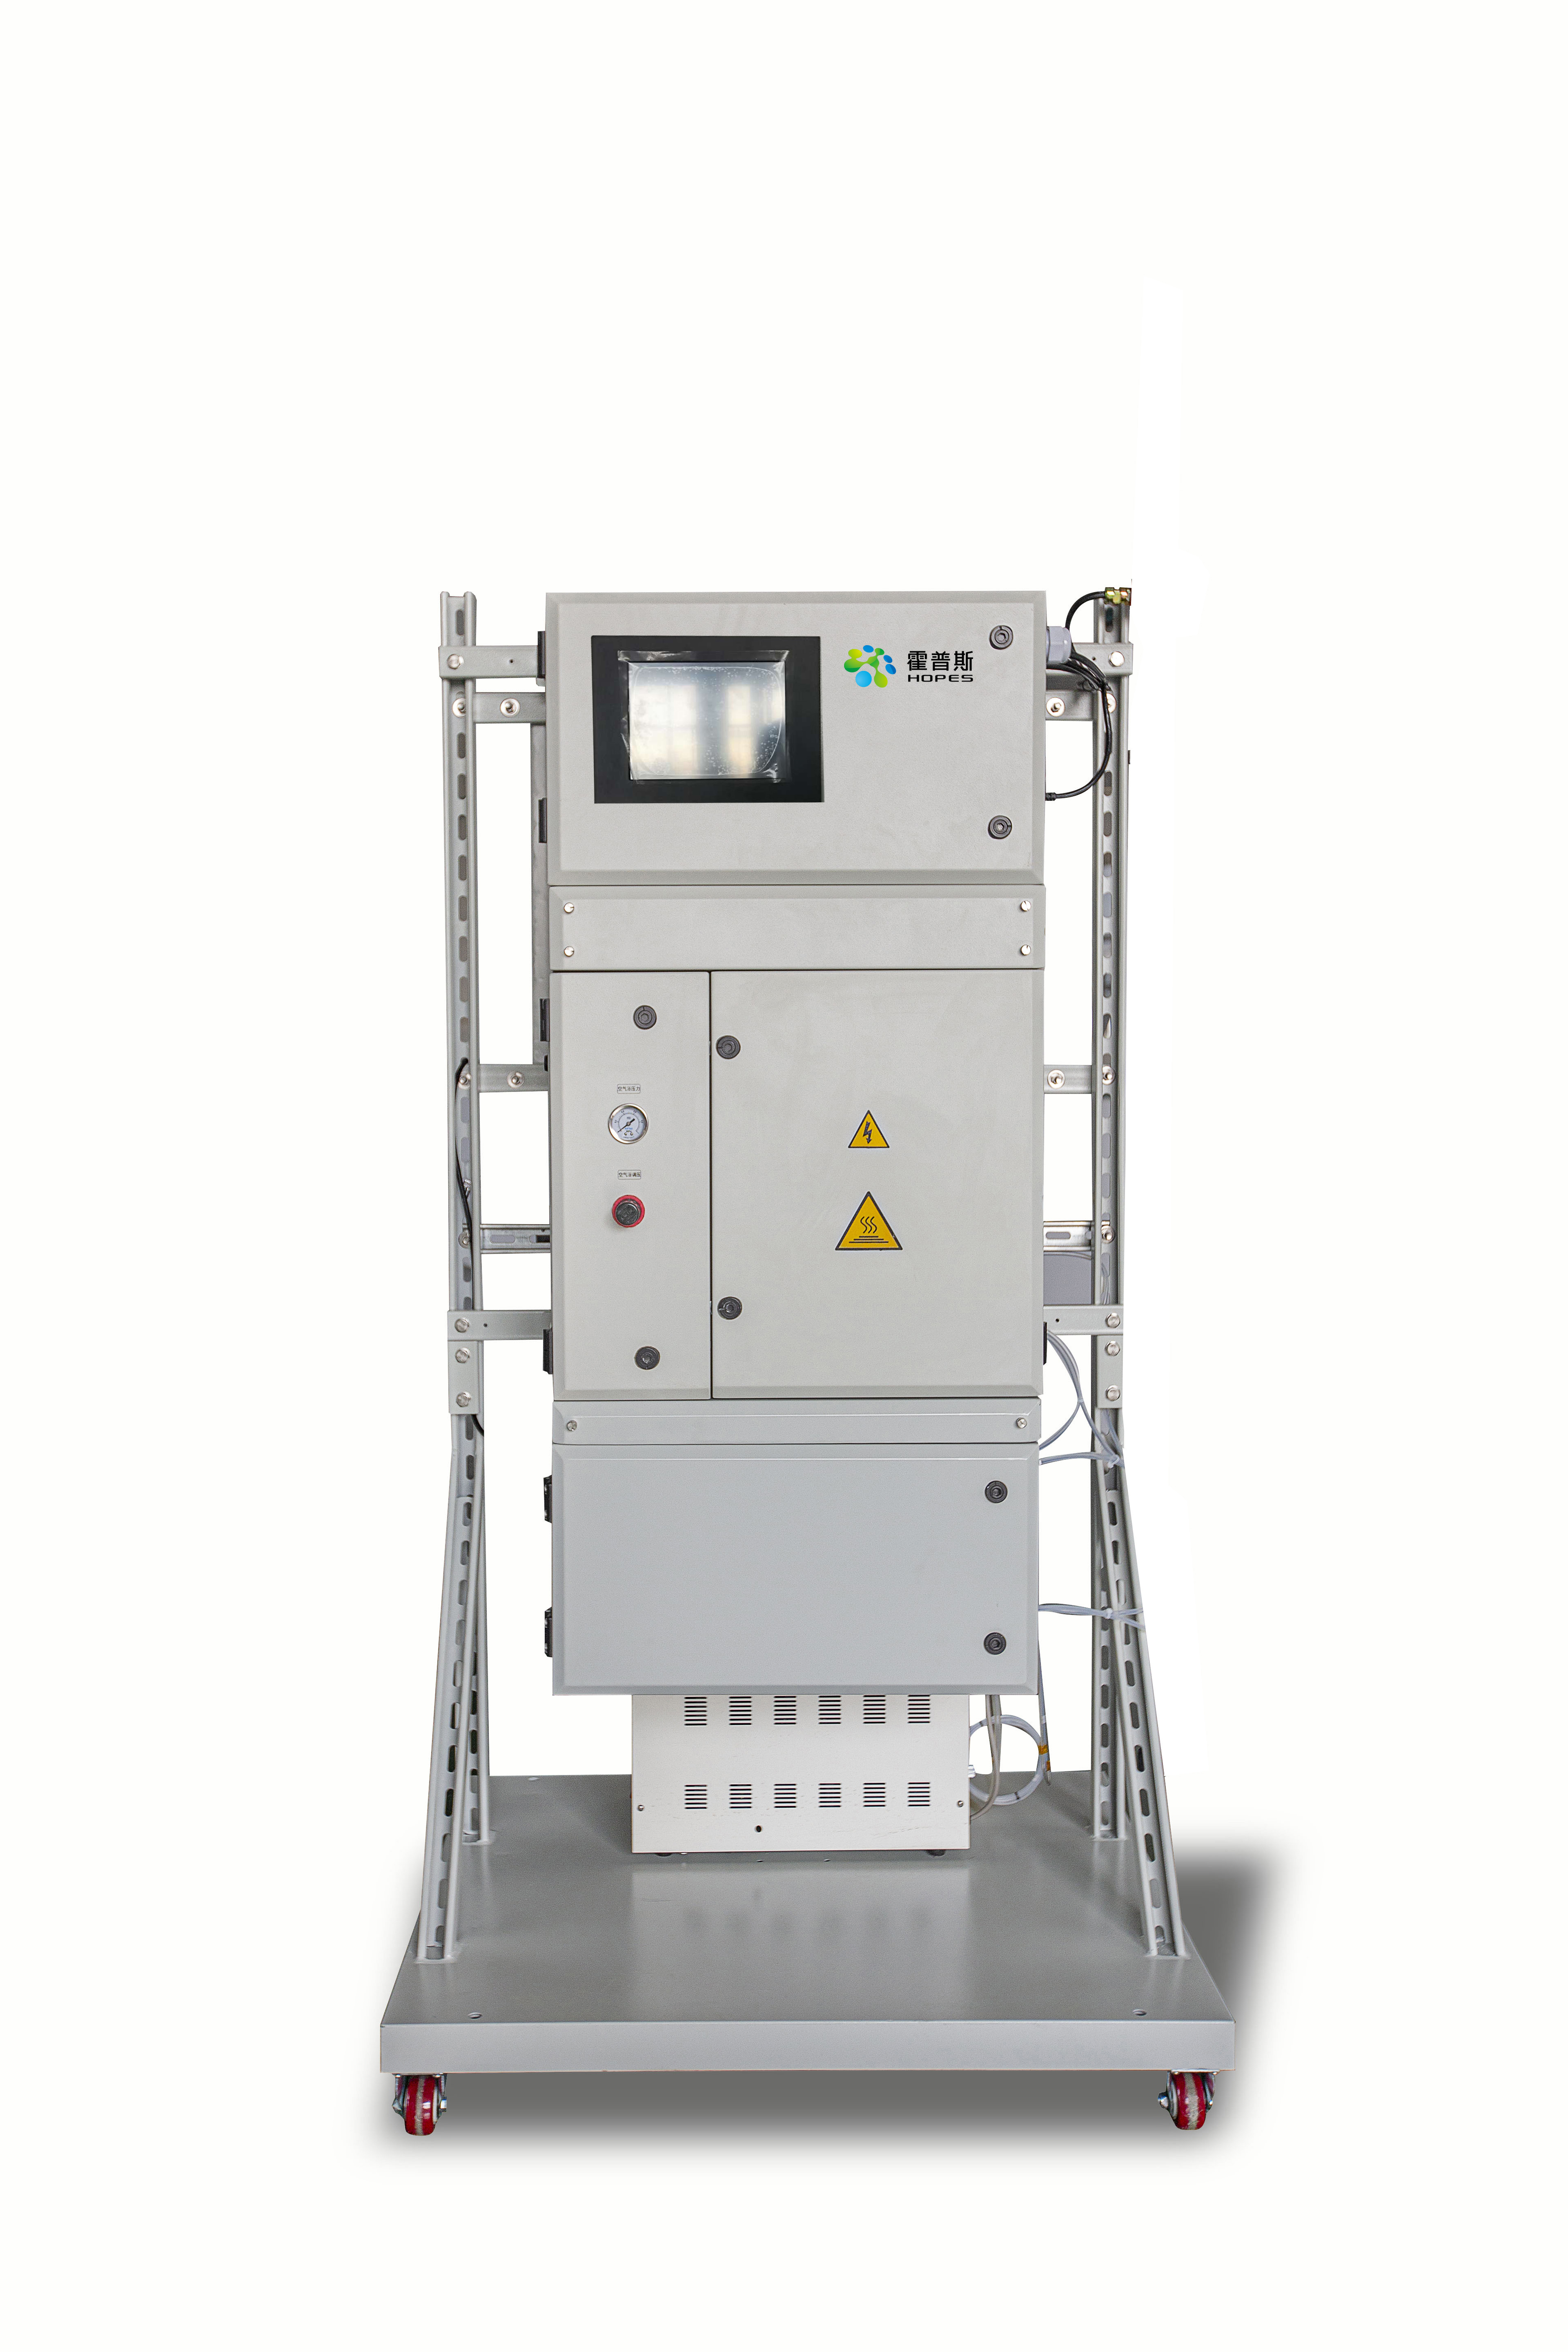 霍普斯-环境空气非甲烷总烃在线监测系统-PGCM-5500A